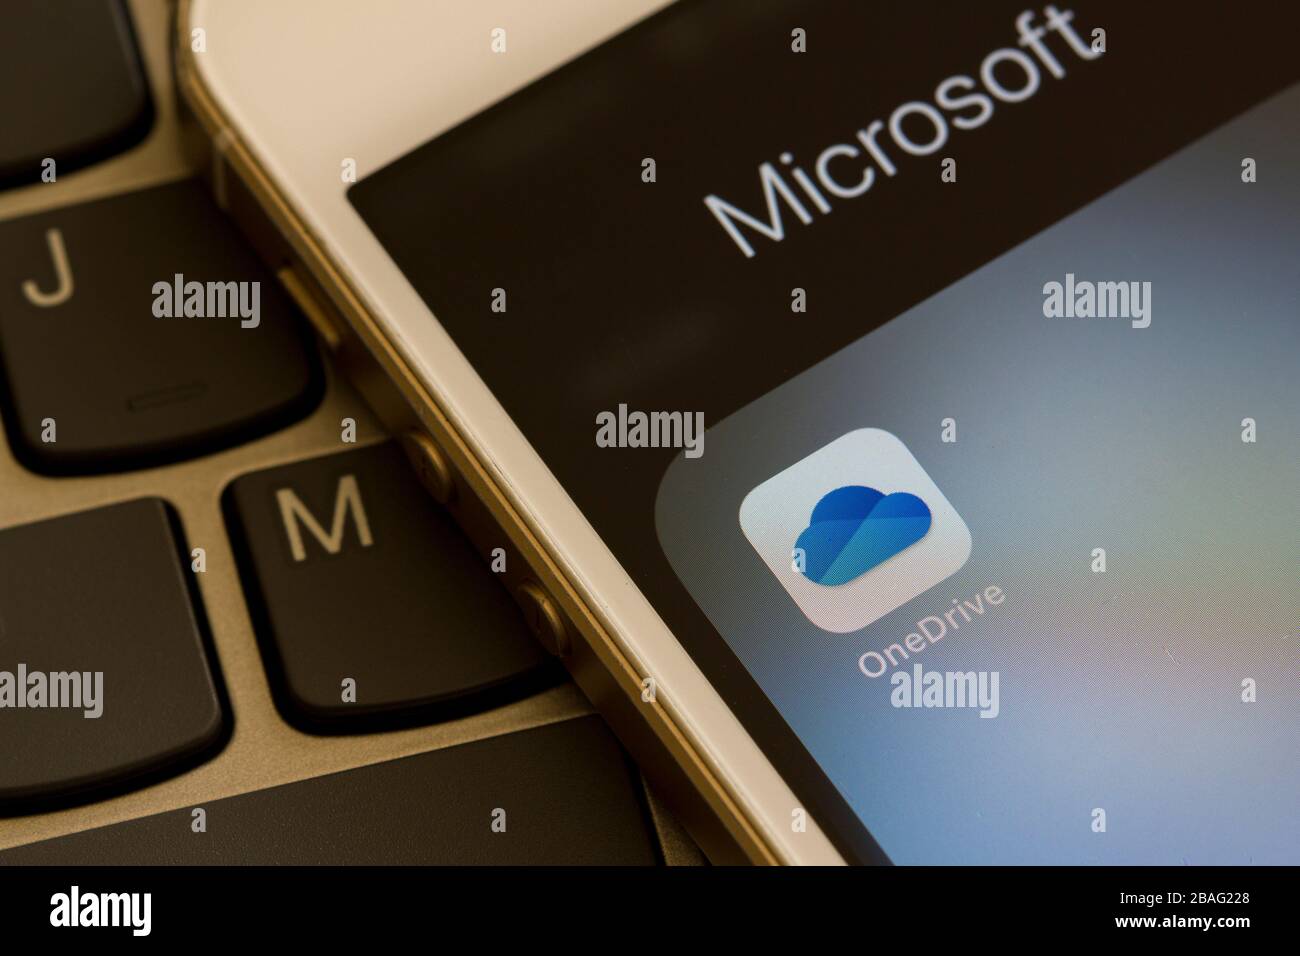 L'icona dell'app mobile Microsoft OneDrive viene visualizzata su uno smartphone. OneDrive è la soluzione di servizio di archiviazione cloud personale di Microsoft per l'hosting di file. Foto Stock